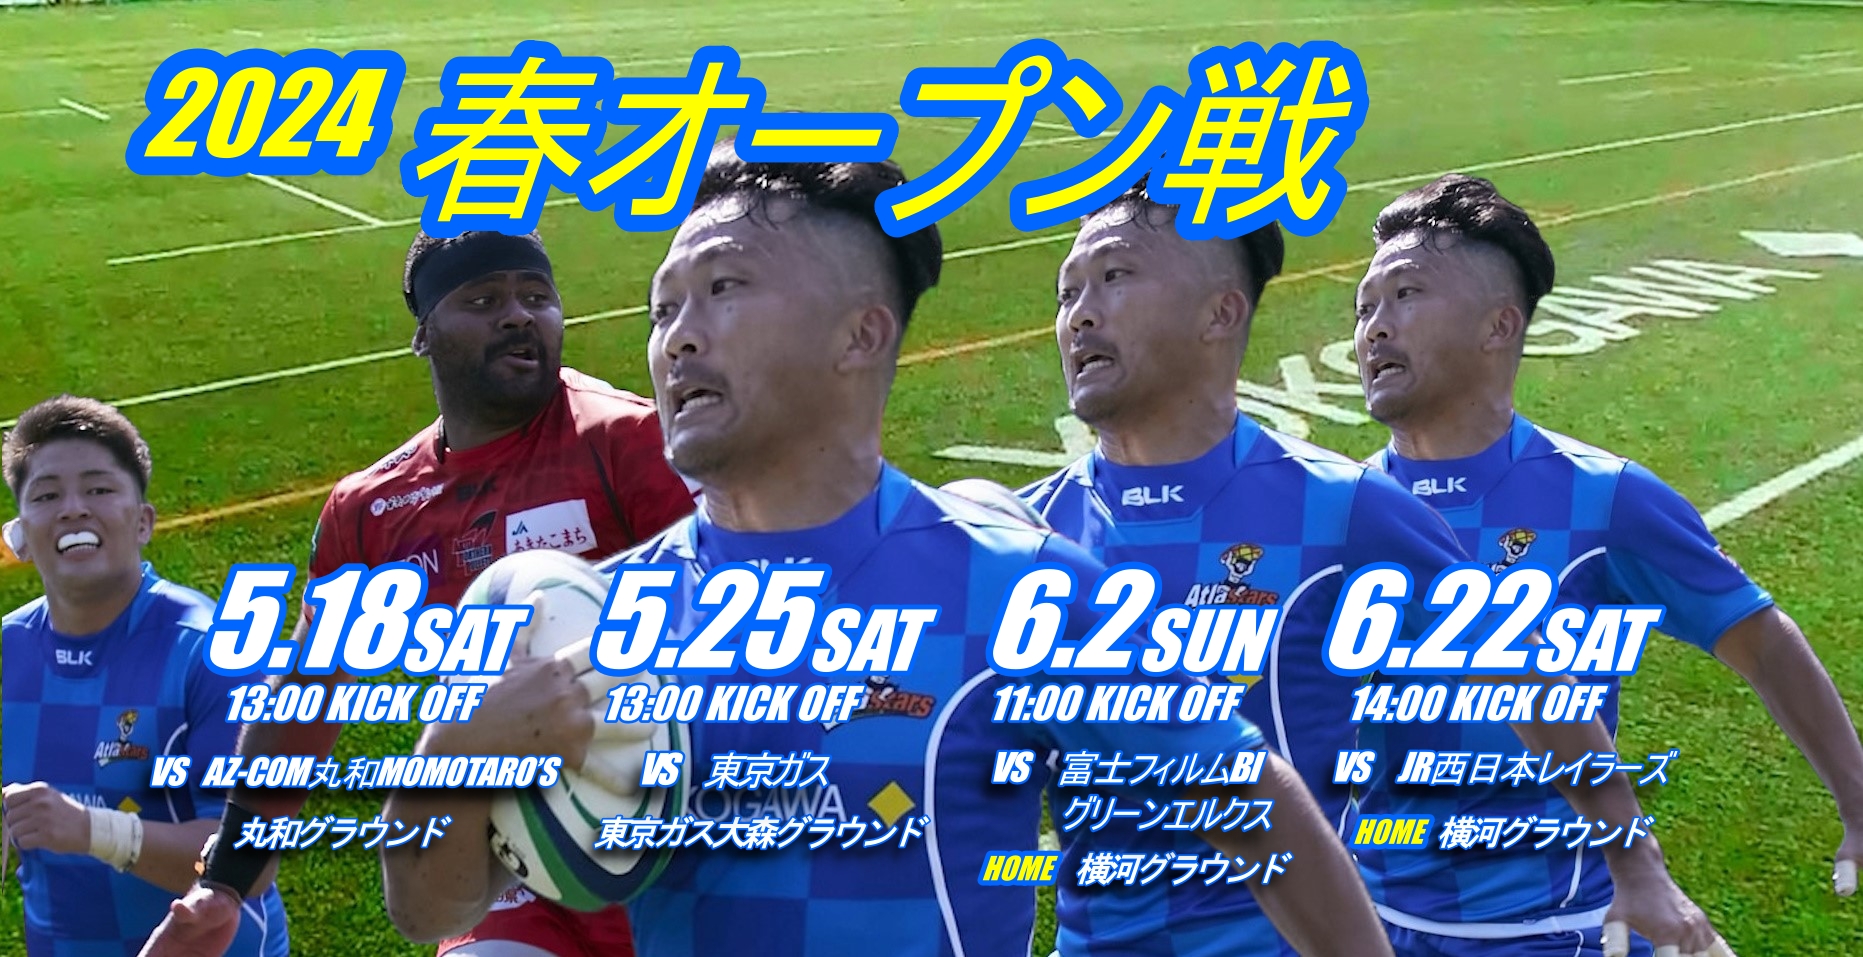 横河武蔵野アトラスターズ ラグビークラブチームの画像